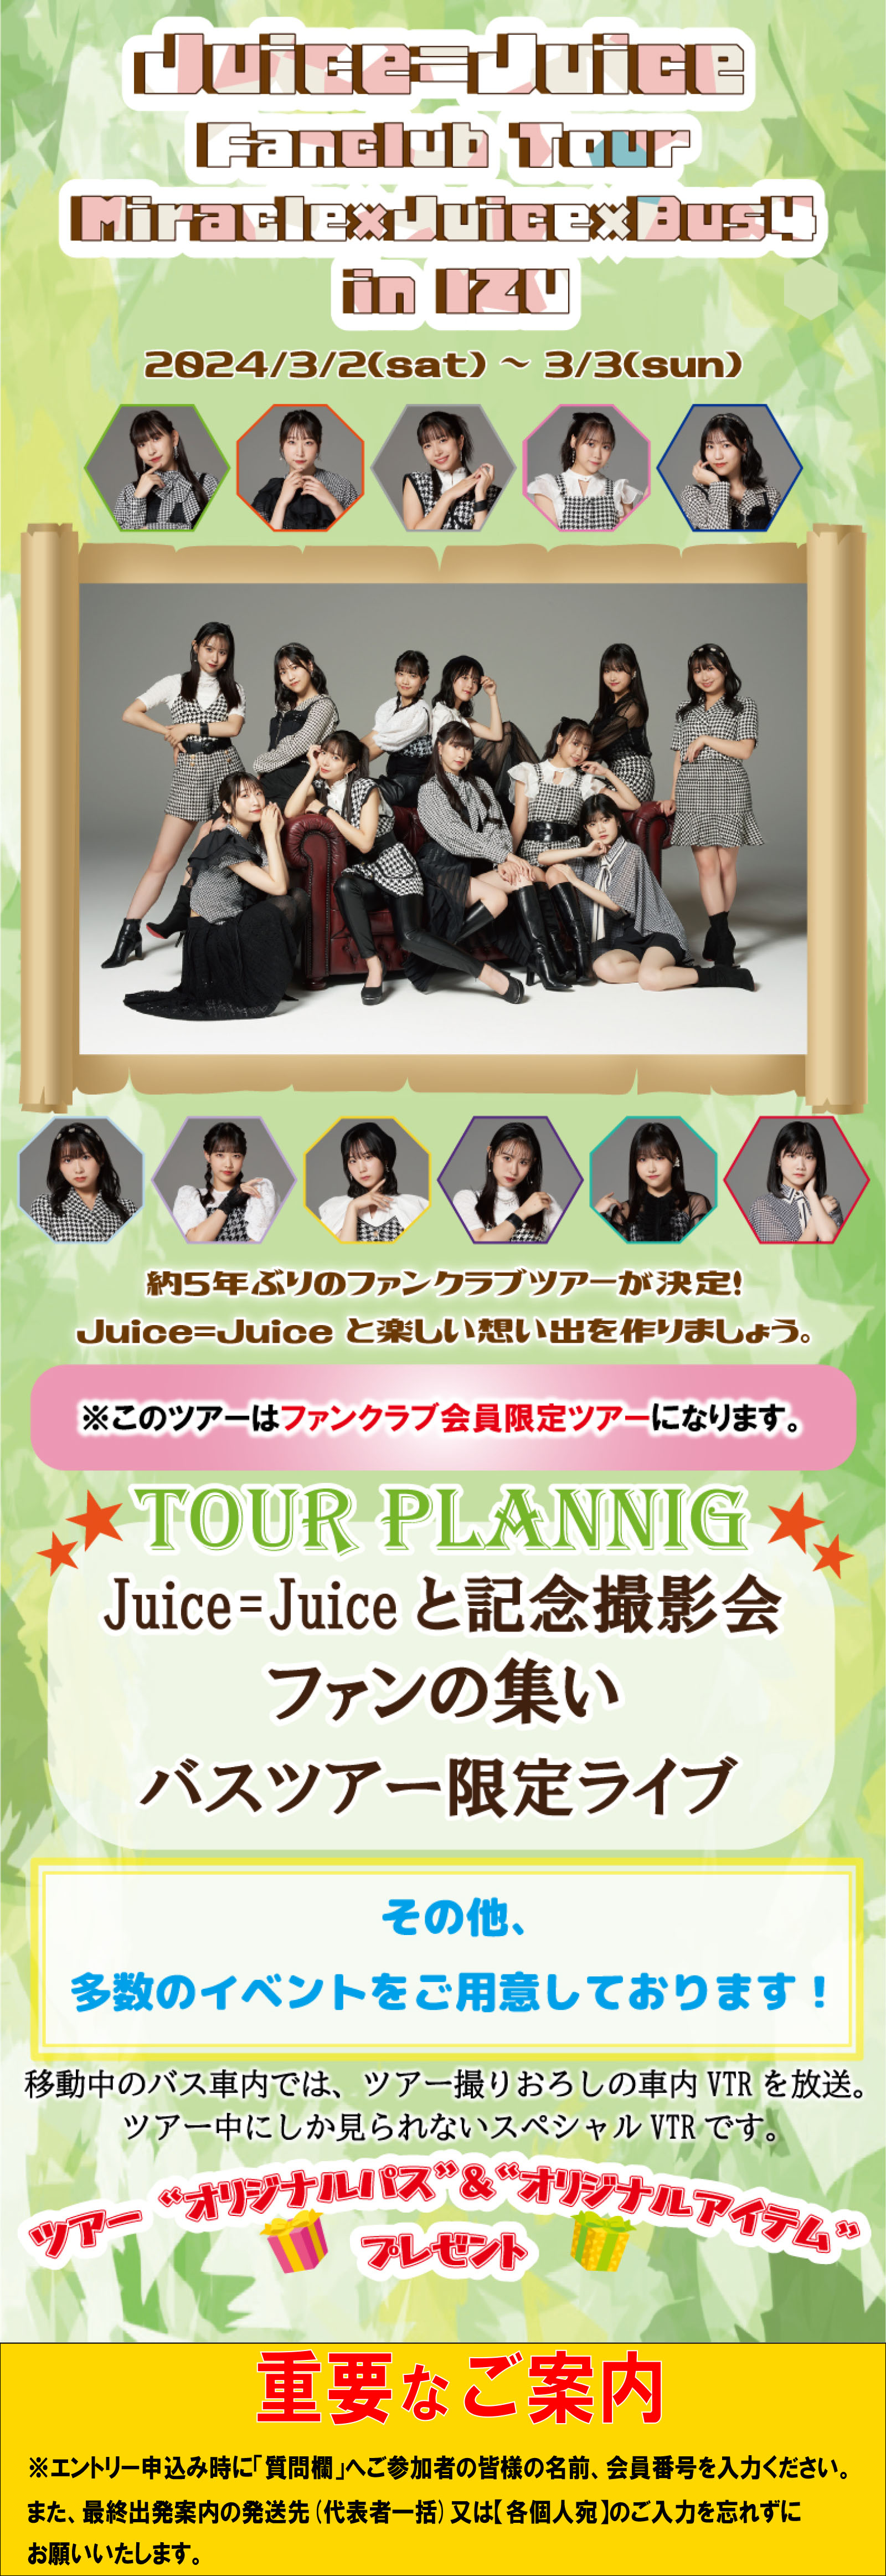 Juice=Juice Fanclub Tour Miracle×Juice×Bus4 in IZU｜スキーツアー 